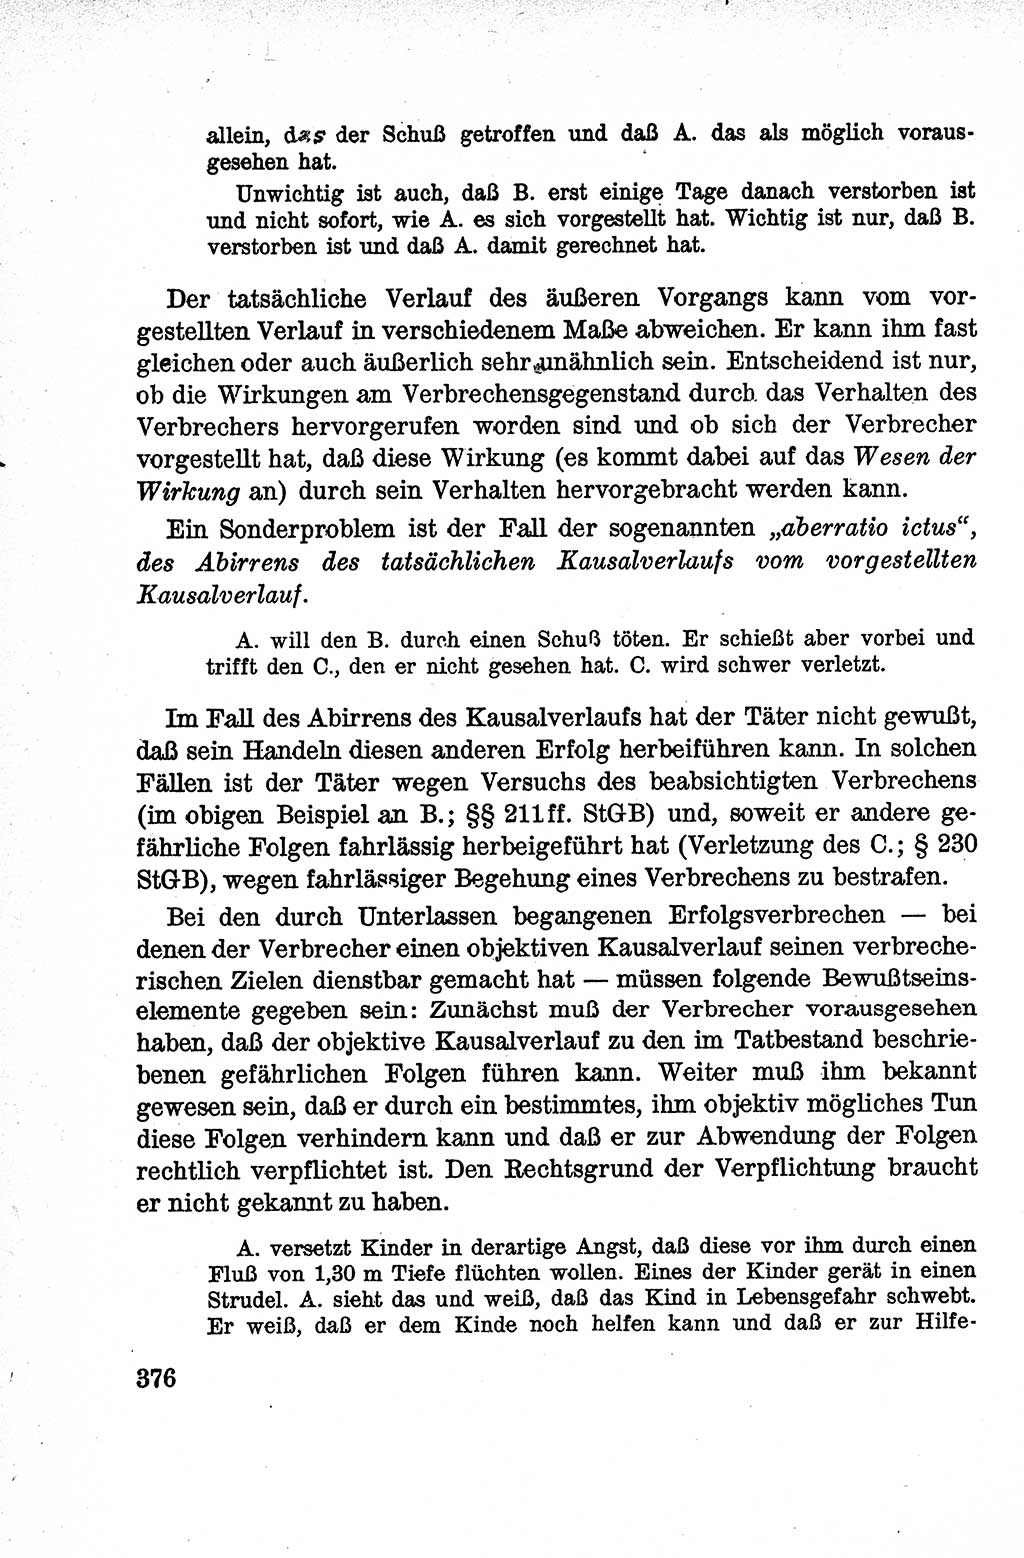 Lehrbuch des Strafrechts der Deutschen Demokratischen Republik (DDR), Allgemeiner Teil 1959, Seite 376 (Lb. Strafr. DDR AT 1959, S. 376)